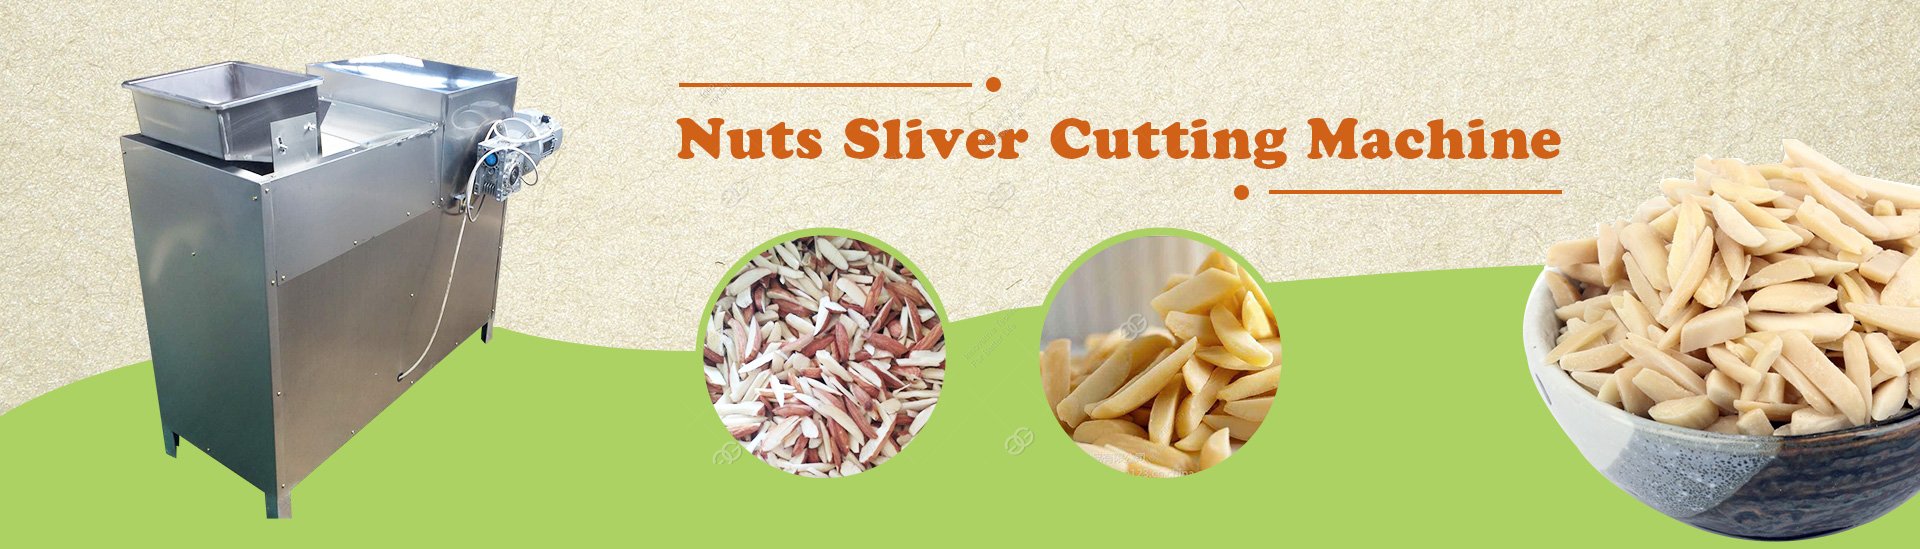 Nut Sliver Cutting Machine